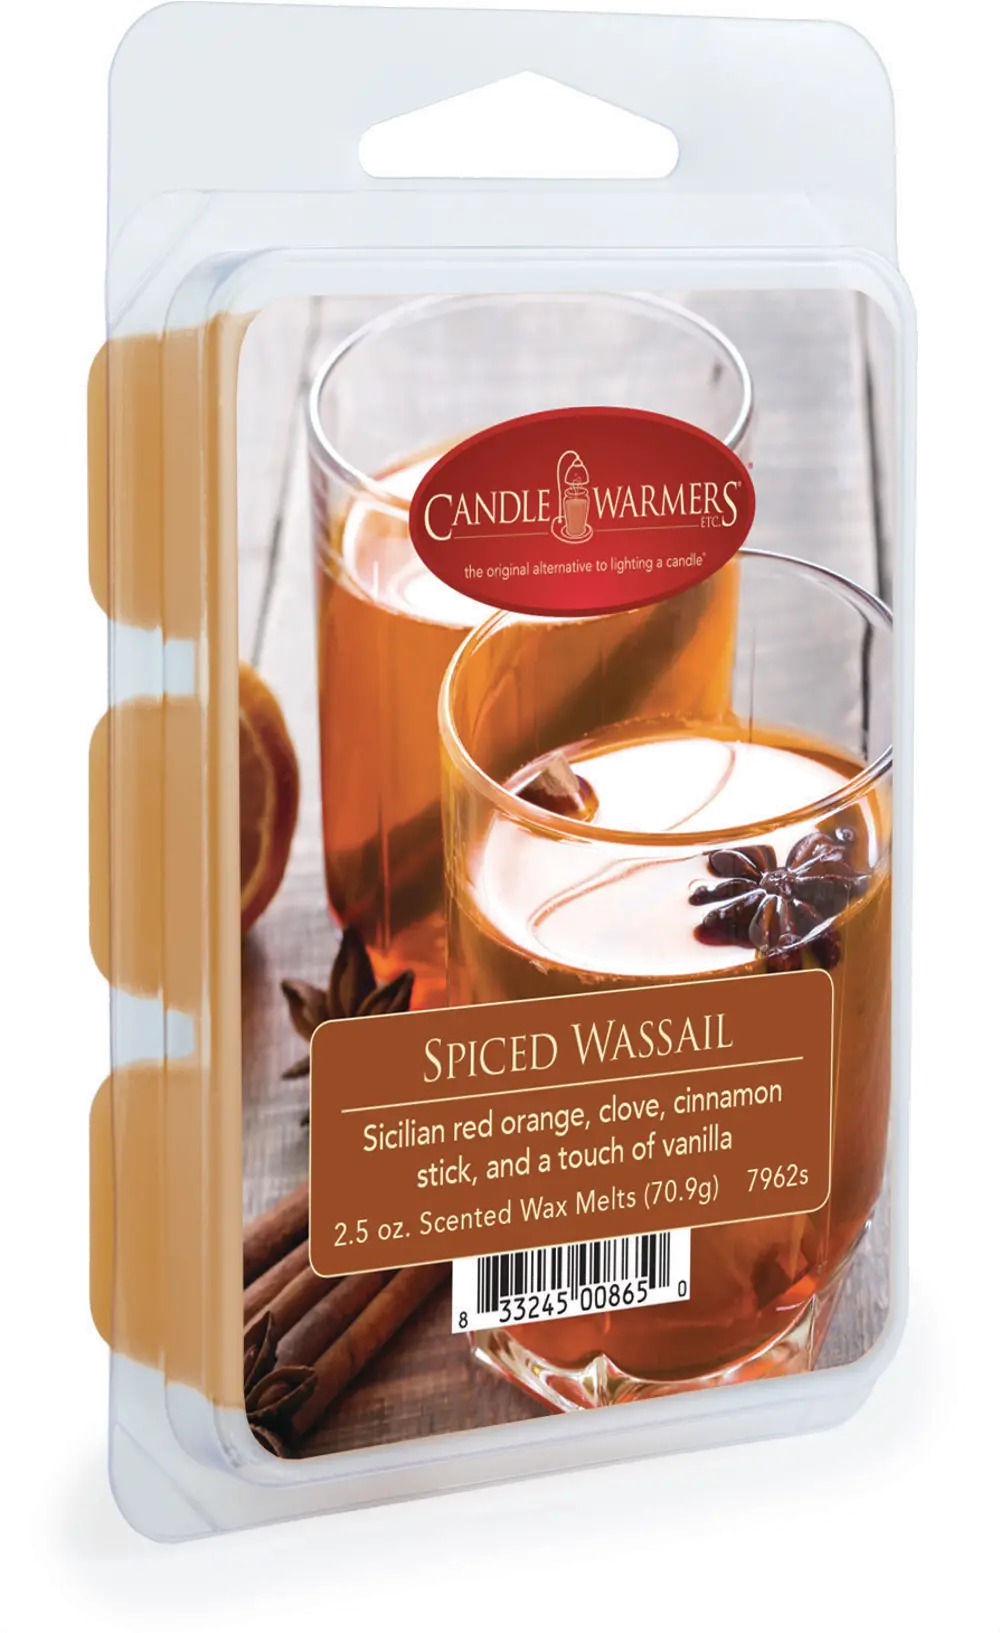 Spiced Wassail 2.5oz Wax Melt - Candle Warmers-1